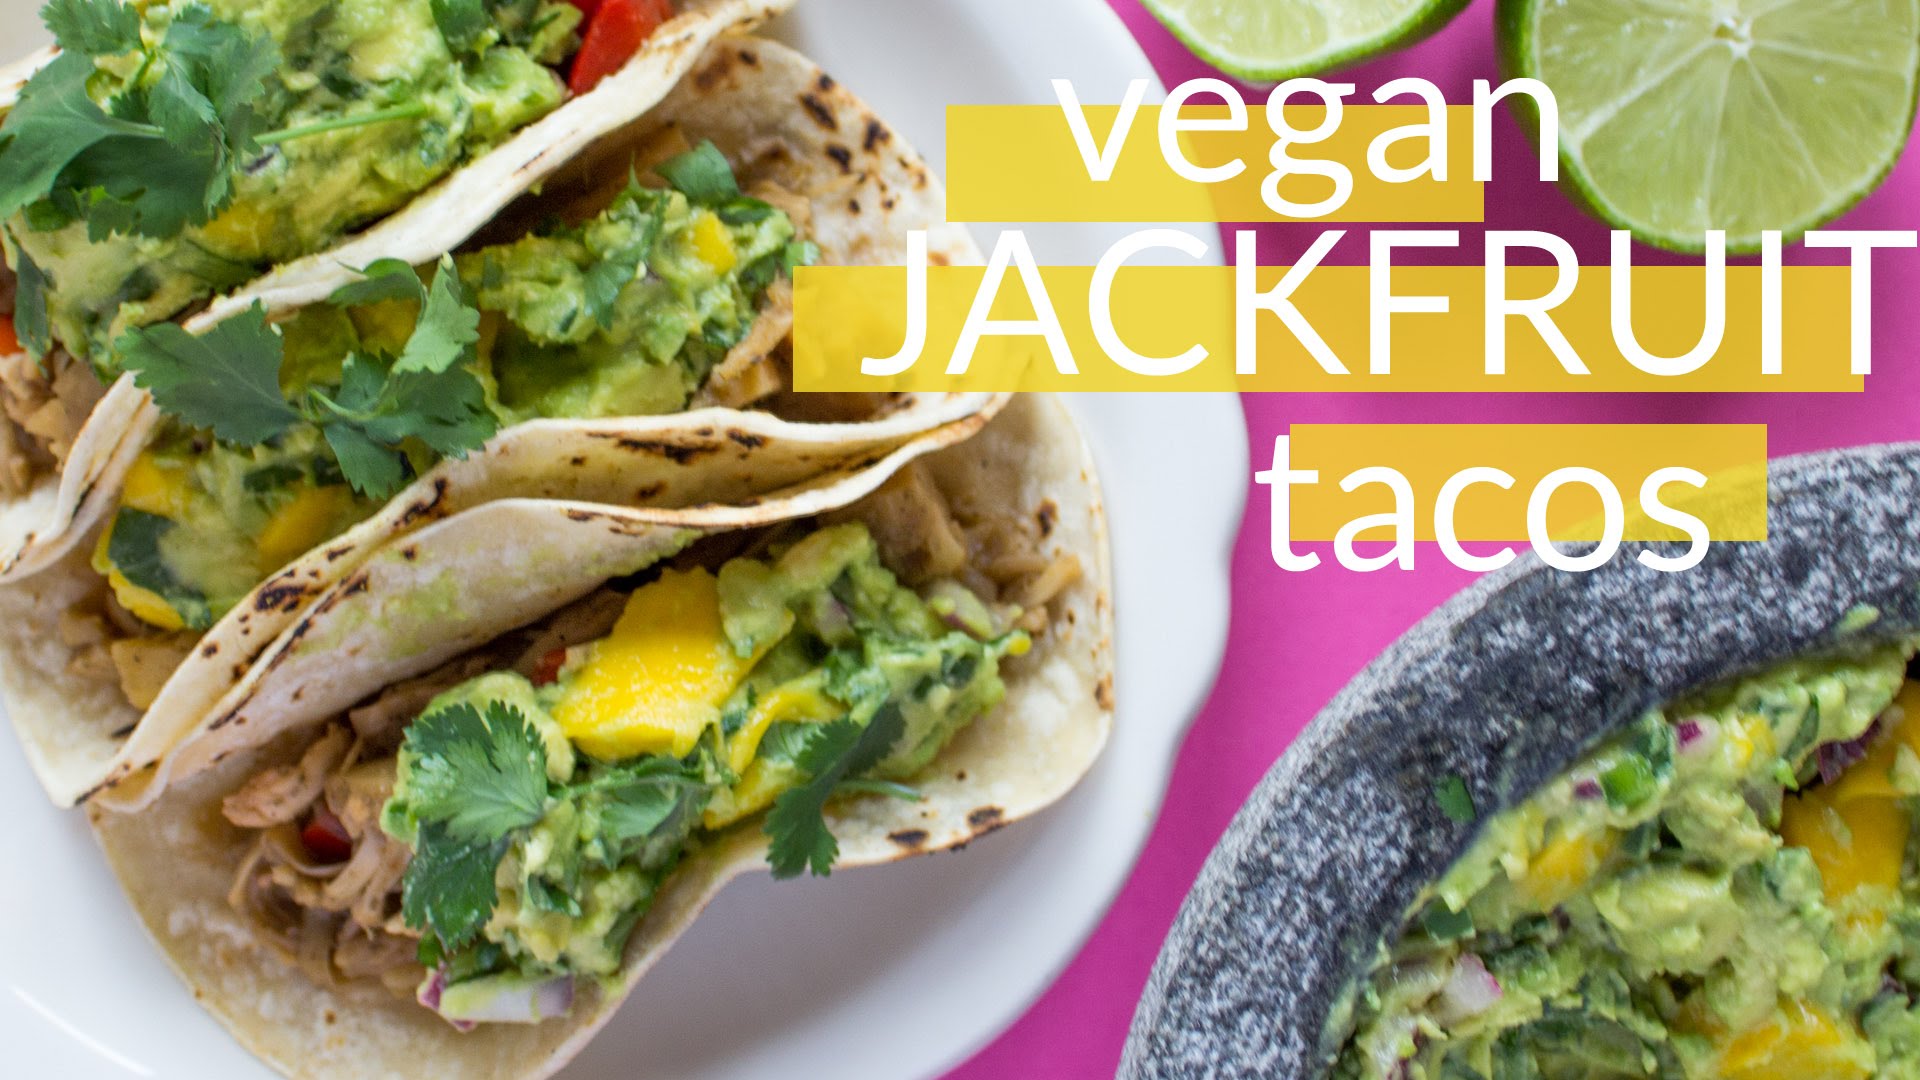 Vegan Jerk Jackfruit Tacos | How to Cook Jackfruit - YouTube